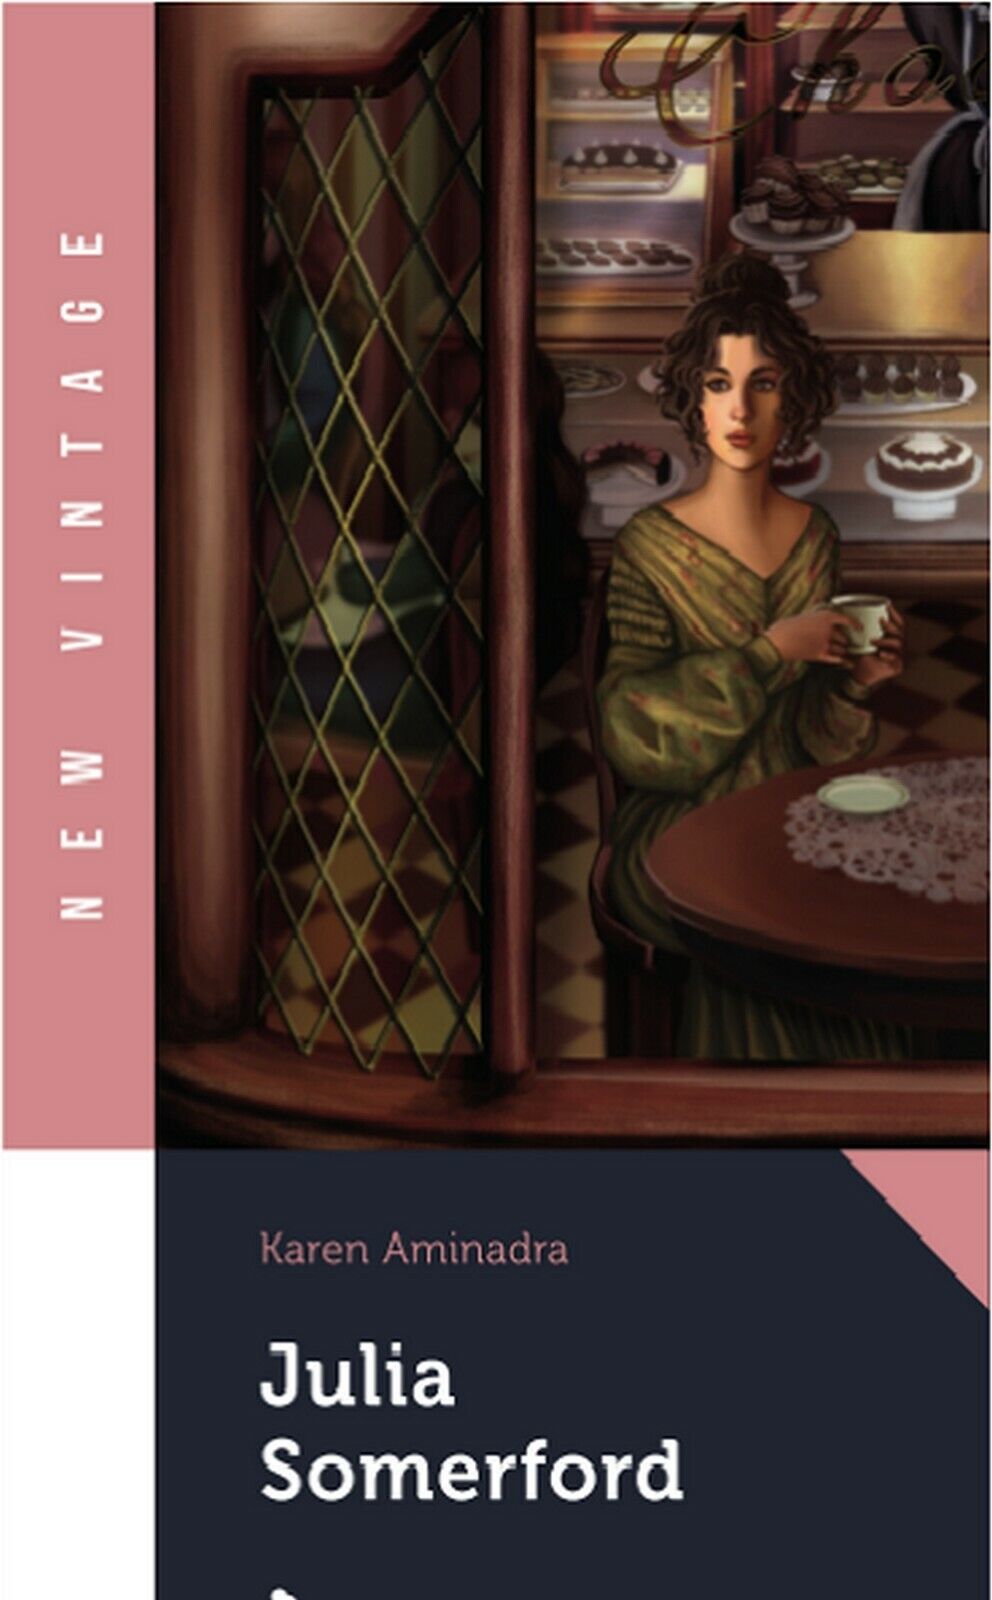 JULIA SOMERFORD  di Karen Aminadra,  2020,  Vintage Editore